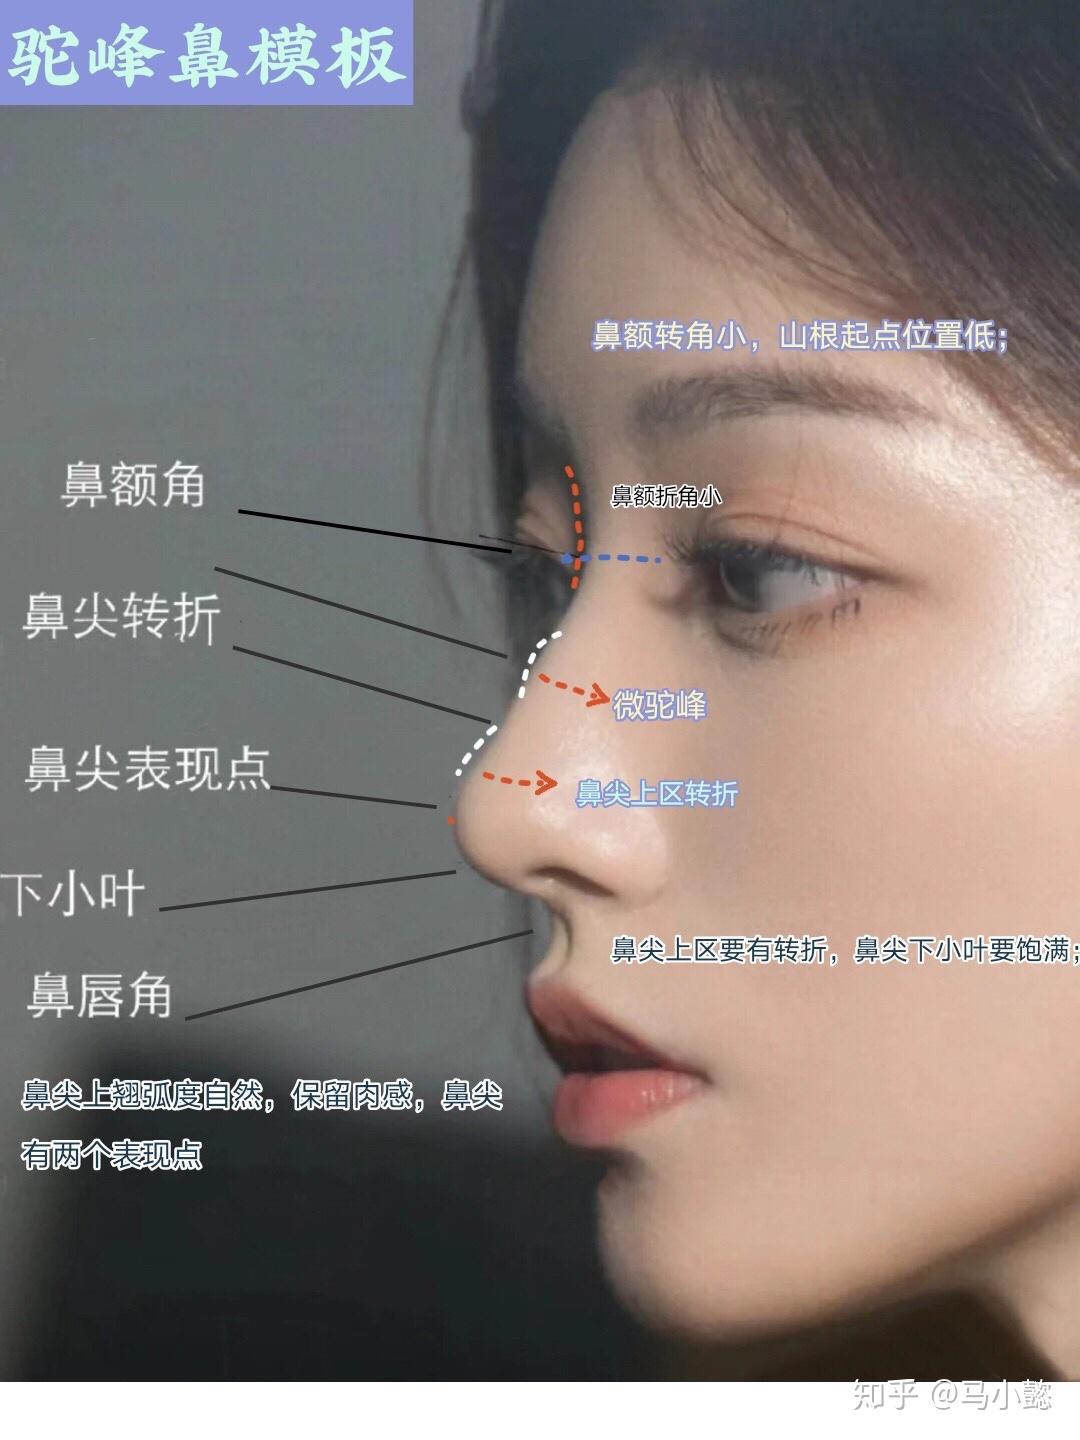 上海九院毕业做隆鼻好看的整形医生-变美网-了解日本美容美妆资讯